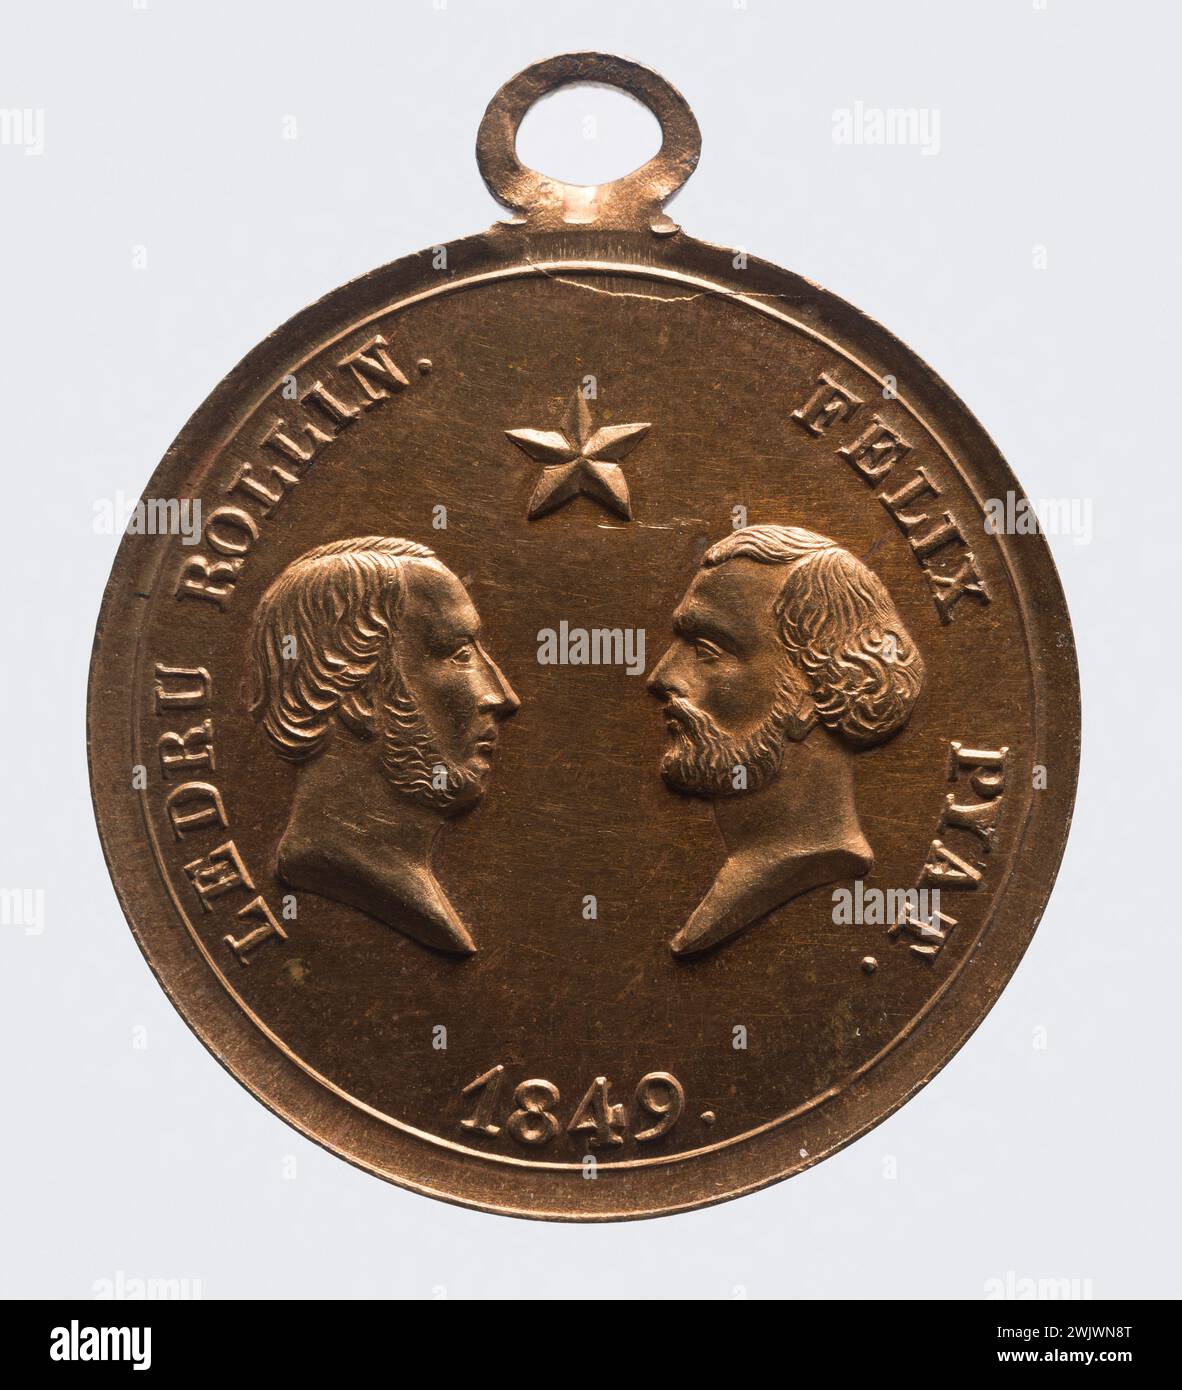 Profiles of Alexandre-Auguste Ledru-Rollin and Félix Pyat, 1849 ". Cuper. 1849. Paris, Musée Carnavalet. 102018-18 Stock Photo